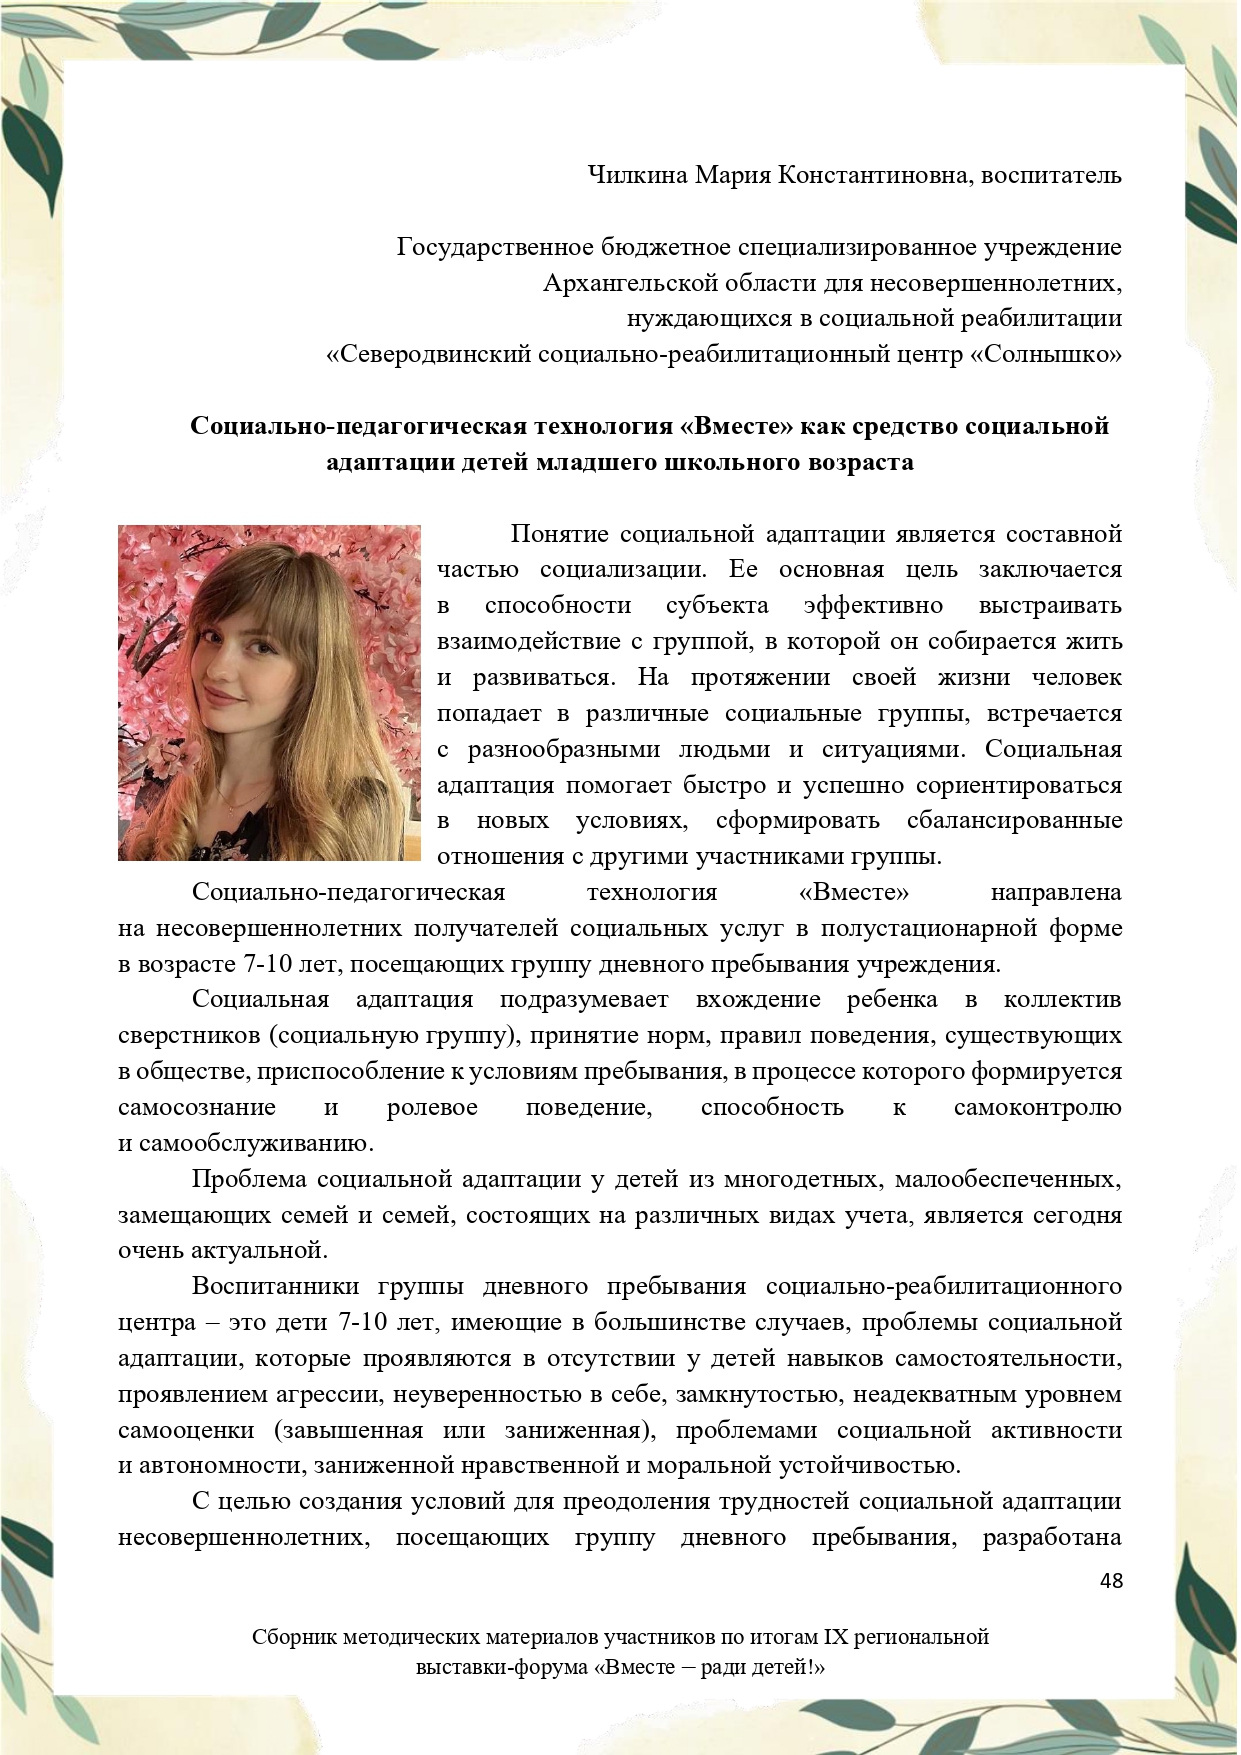 Sbornik_metodicheskikh_materialov_uchastnikov_IX_regionalnoy_vystavki-foruma_Vmeste__radi_detey_33__2023_page-0048